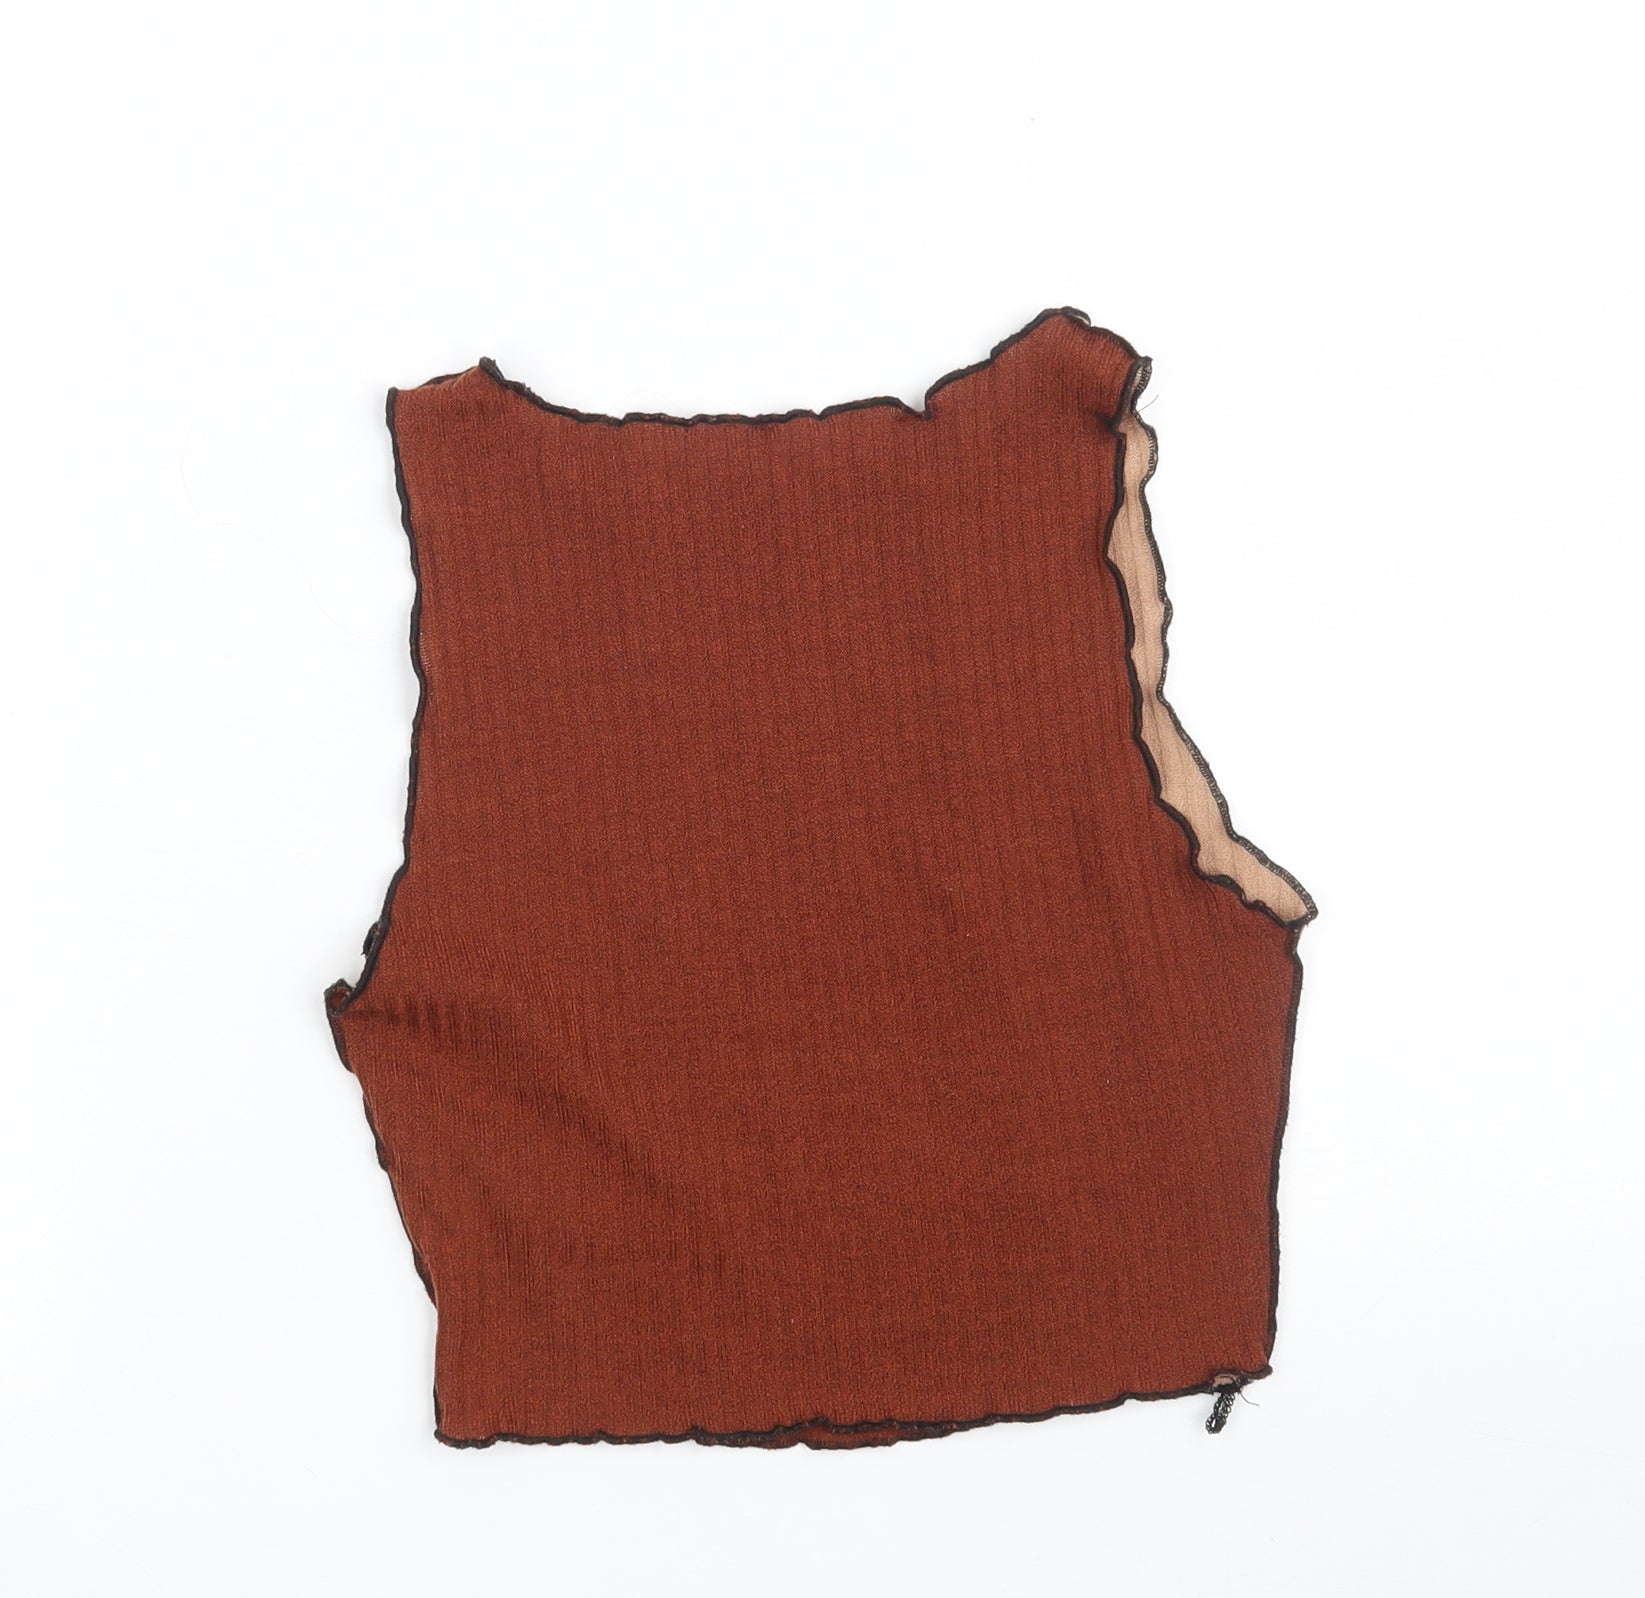 SheIn Womens Brown V-Neck Polyester Vest Jumper Size 2XL – Preworn Ltd